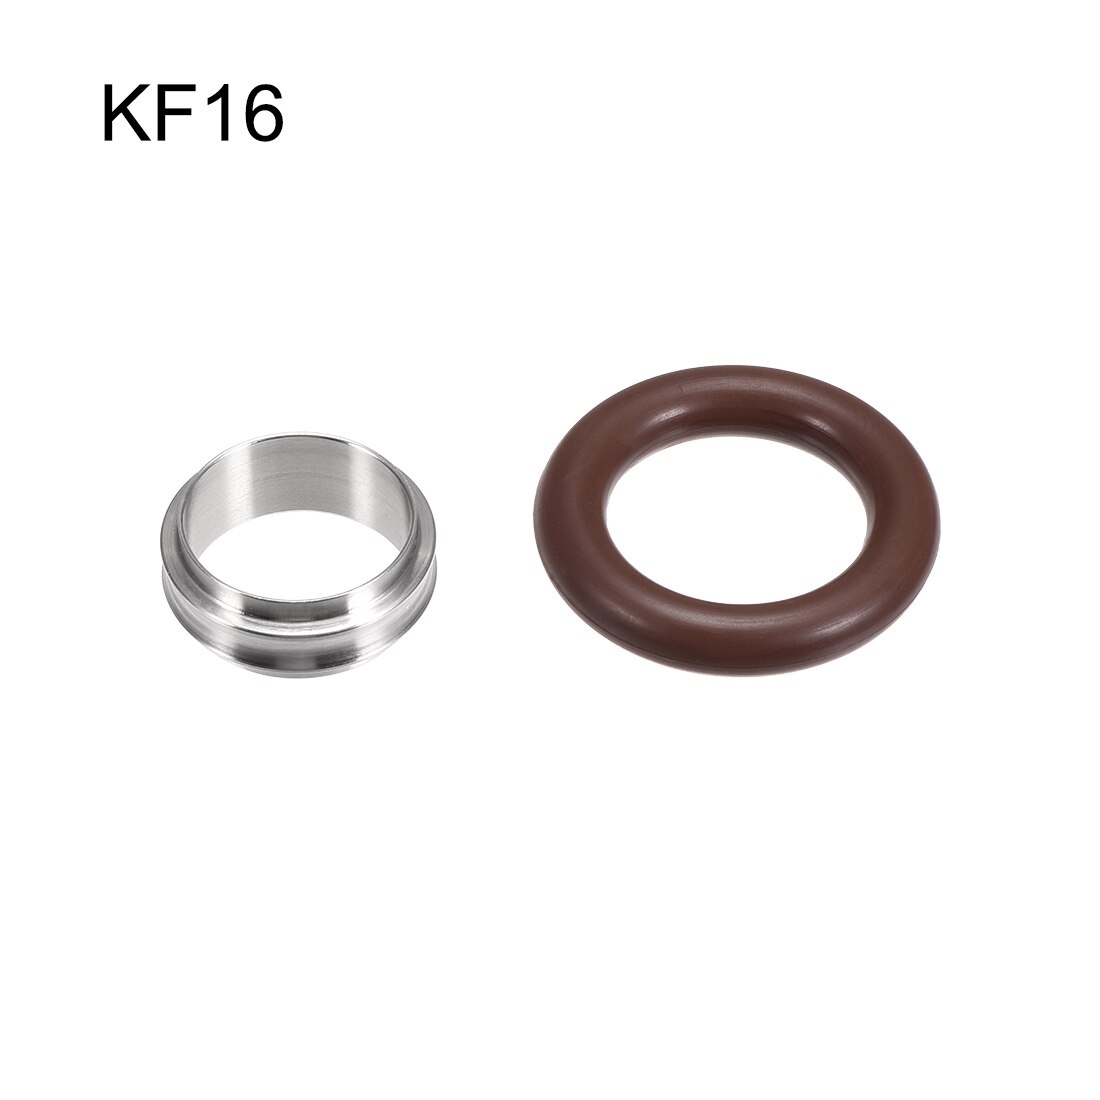 Uxcell centreringsring kf -16 vakuumfittings iso-kf flange 29mm x 16mm rustfrit stål fluorgummi o-ring